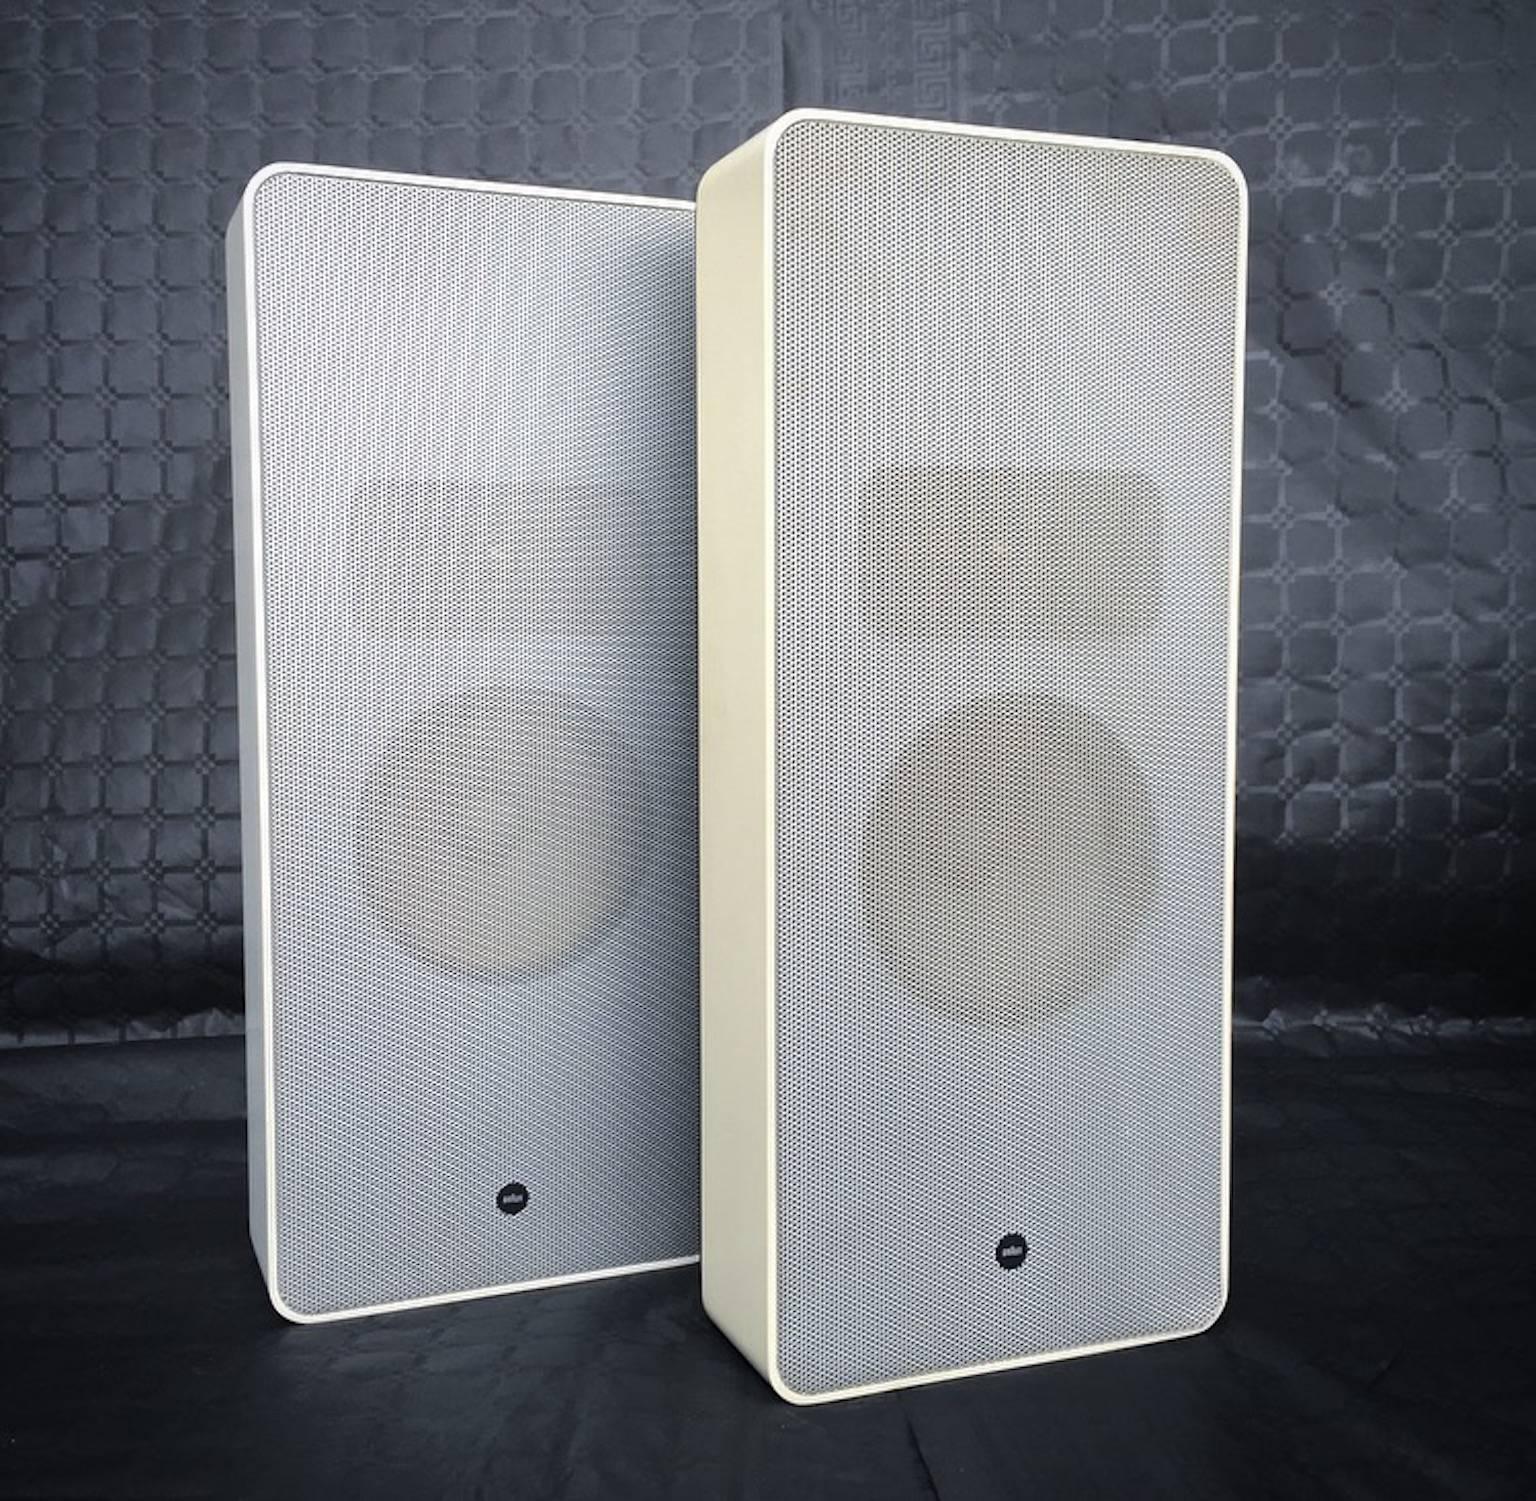 German Wega 3300 Hi-Fi System by Verner Panton with L550 Speakers by Dieter Rams